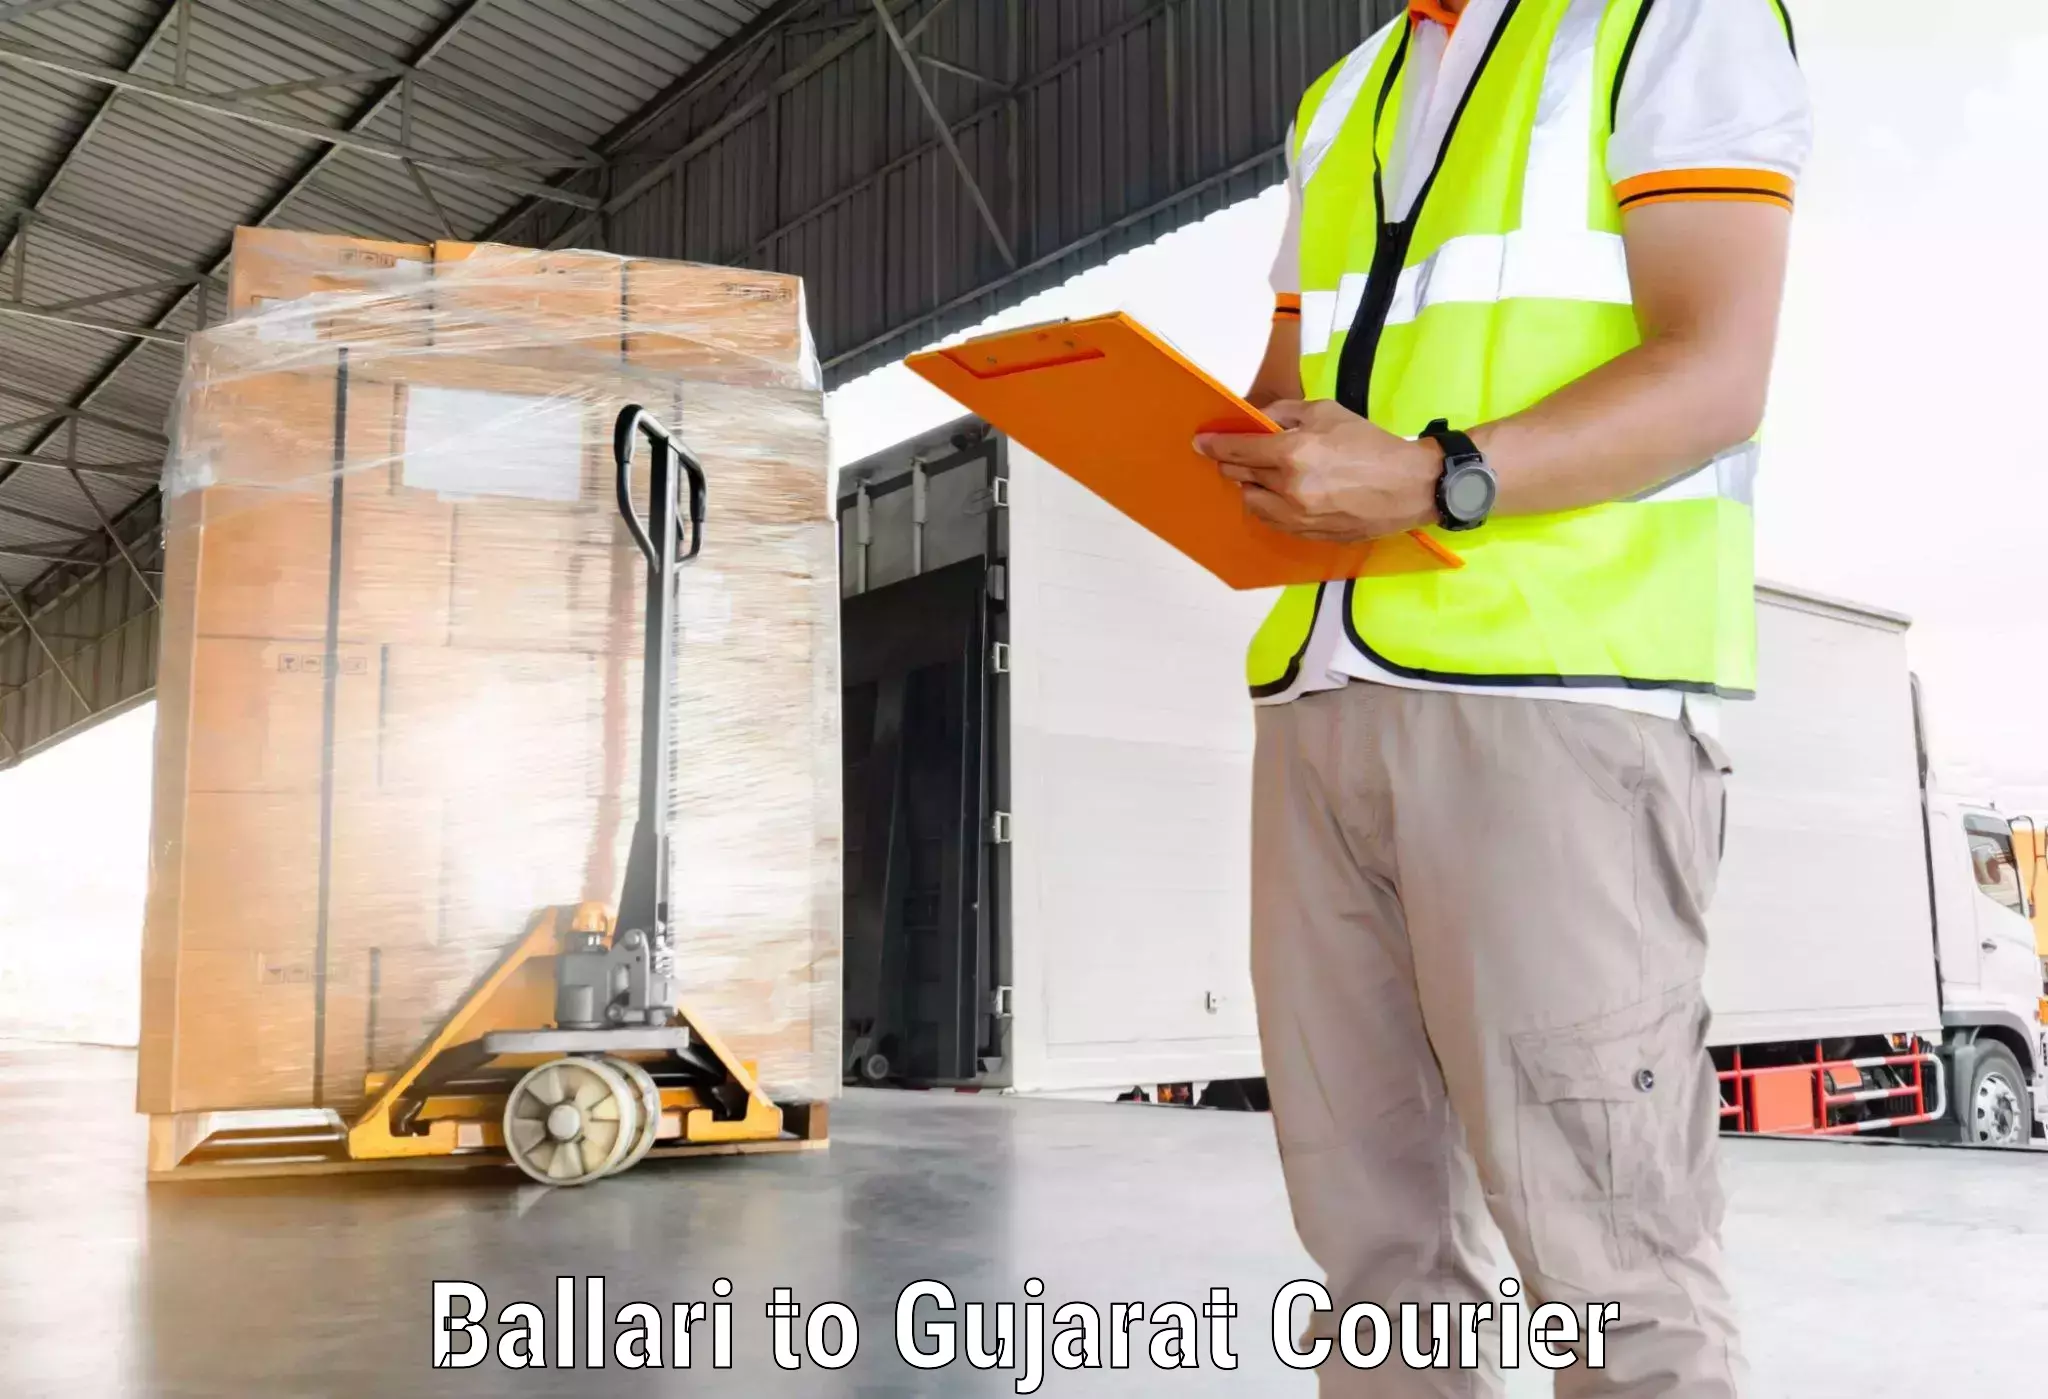 Fast delivery service Ballari to Valsad